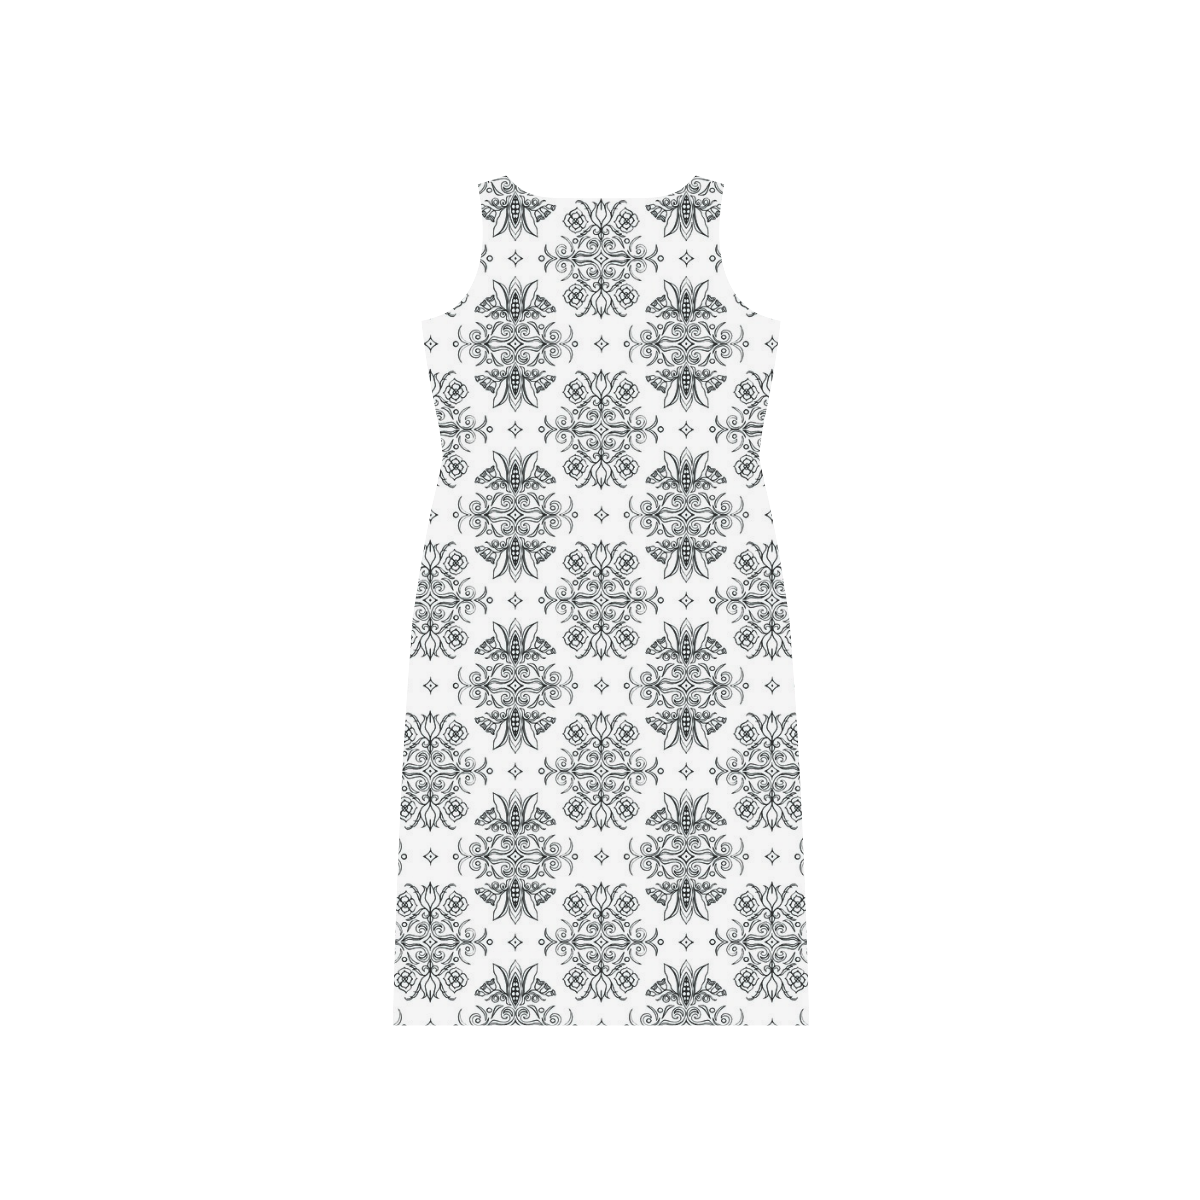 Wall Flower White and Black Drama by Aleta Phaedra Sleeveless Open Fork Long Dress (Model D08)